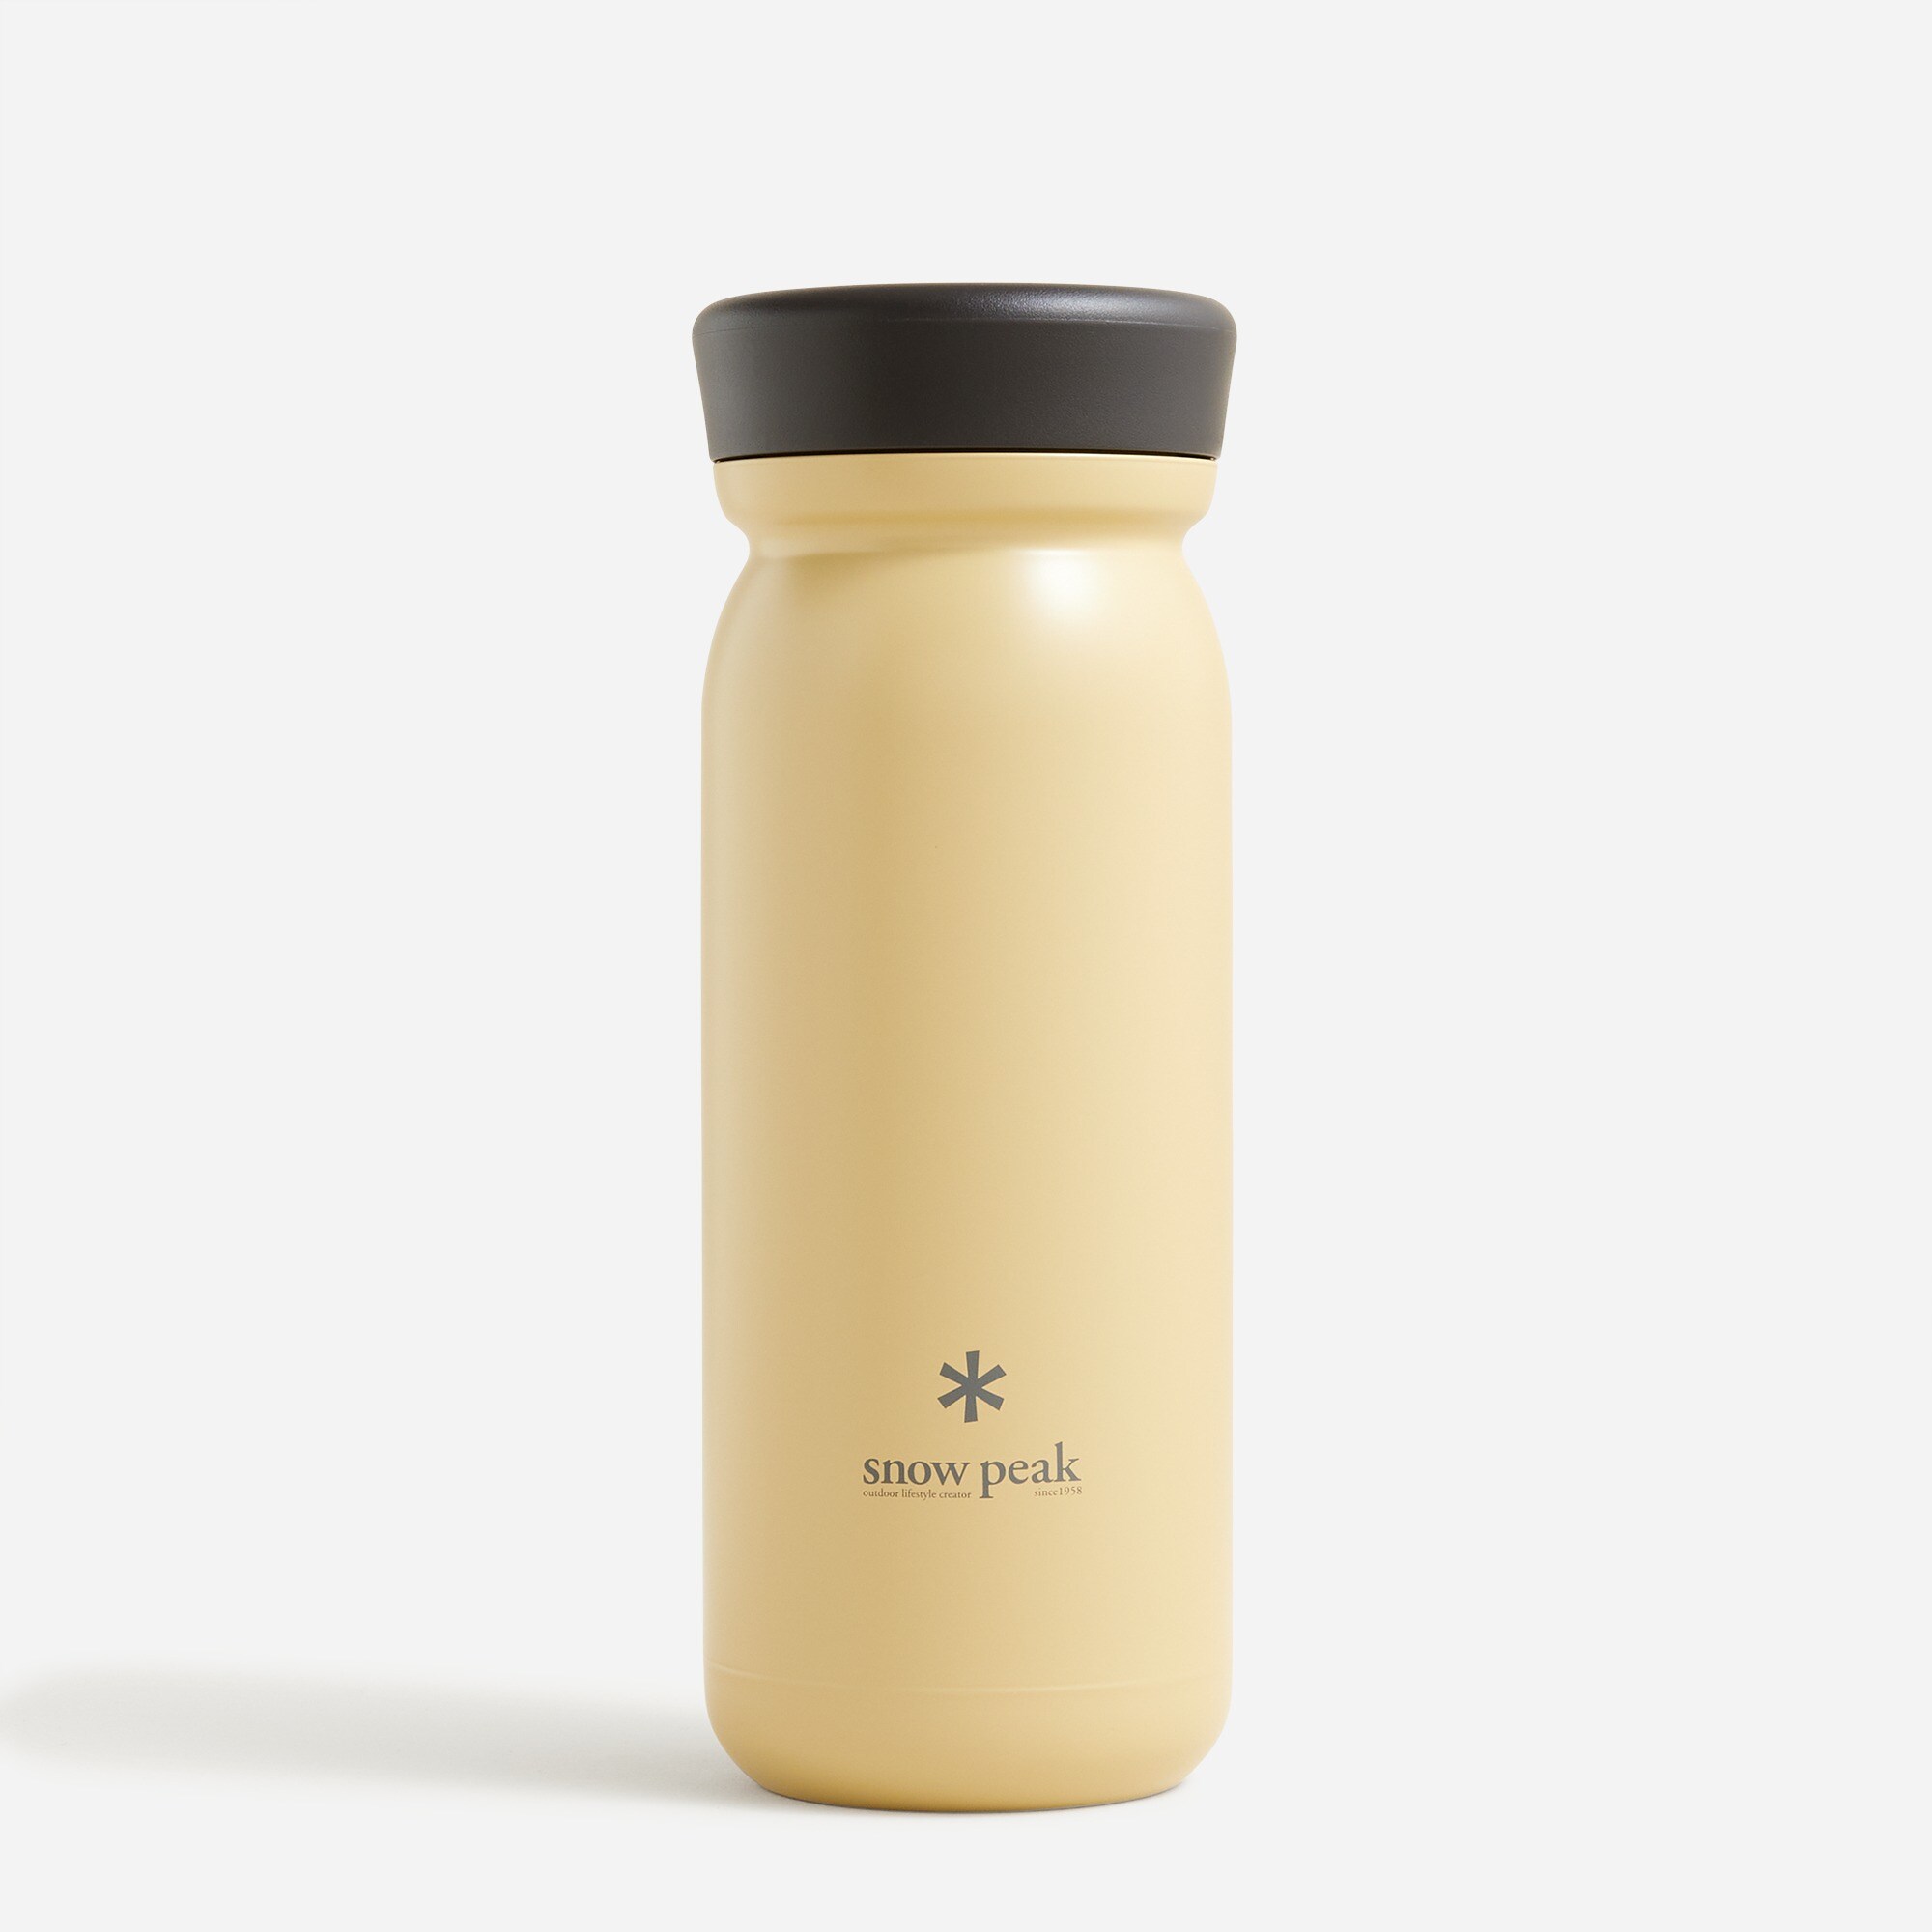  Snow Peak® stainless steel milk bottle